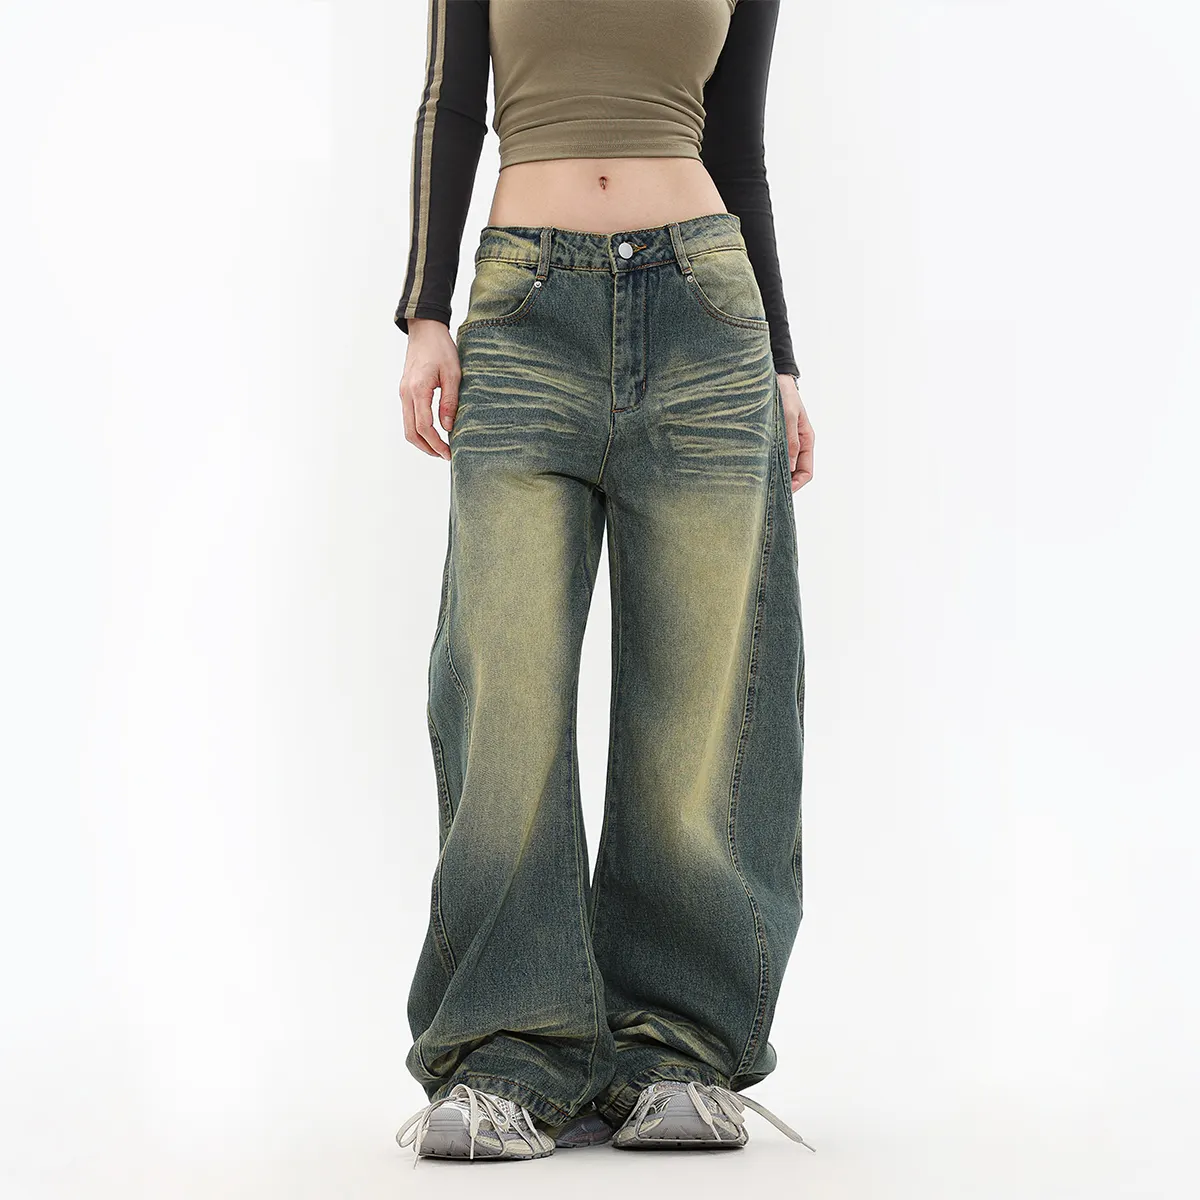 Celana Jeans potongan bot untuk wanita, celana Jeans Denim anyaman rendah dewasa, celana Denim panjang penuh longgar untuk wanita